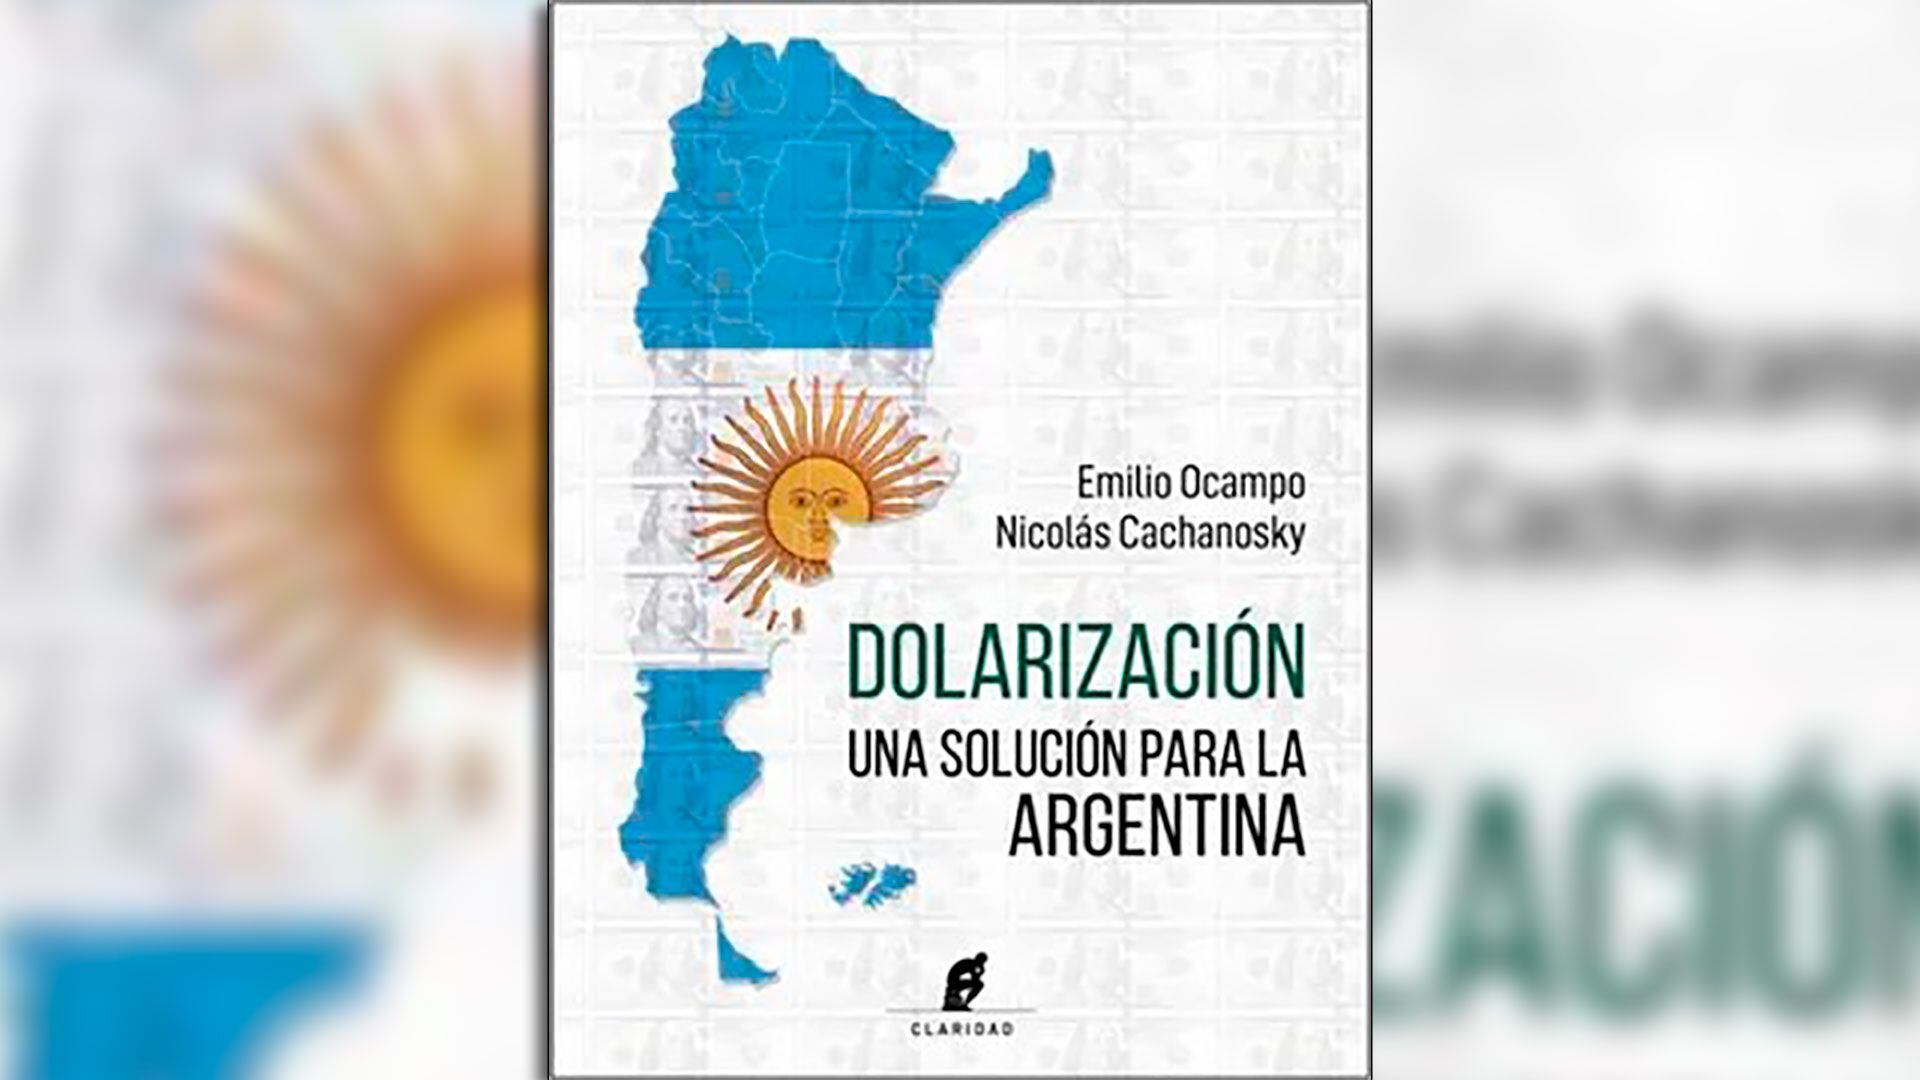 - Dolarización, una solución para Argentina (de Emilio Ocampo y Nicolás Cachanosky)